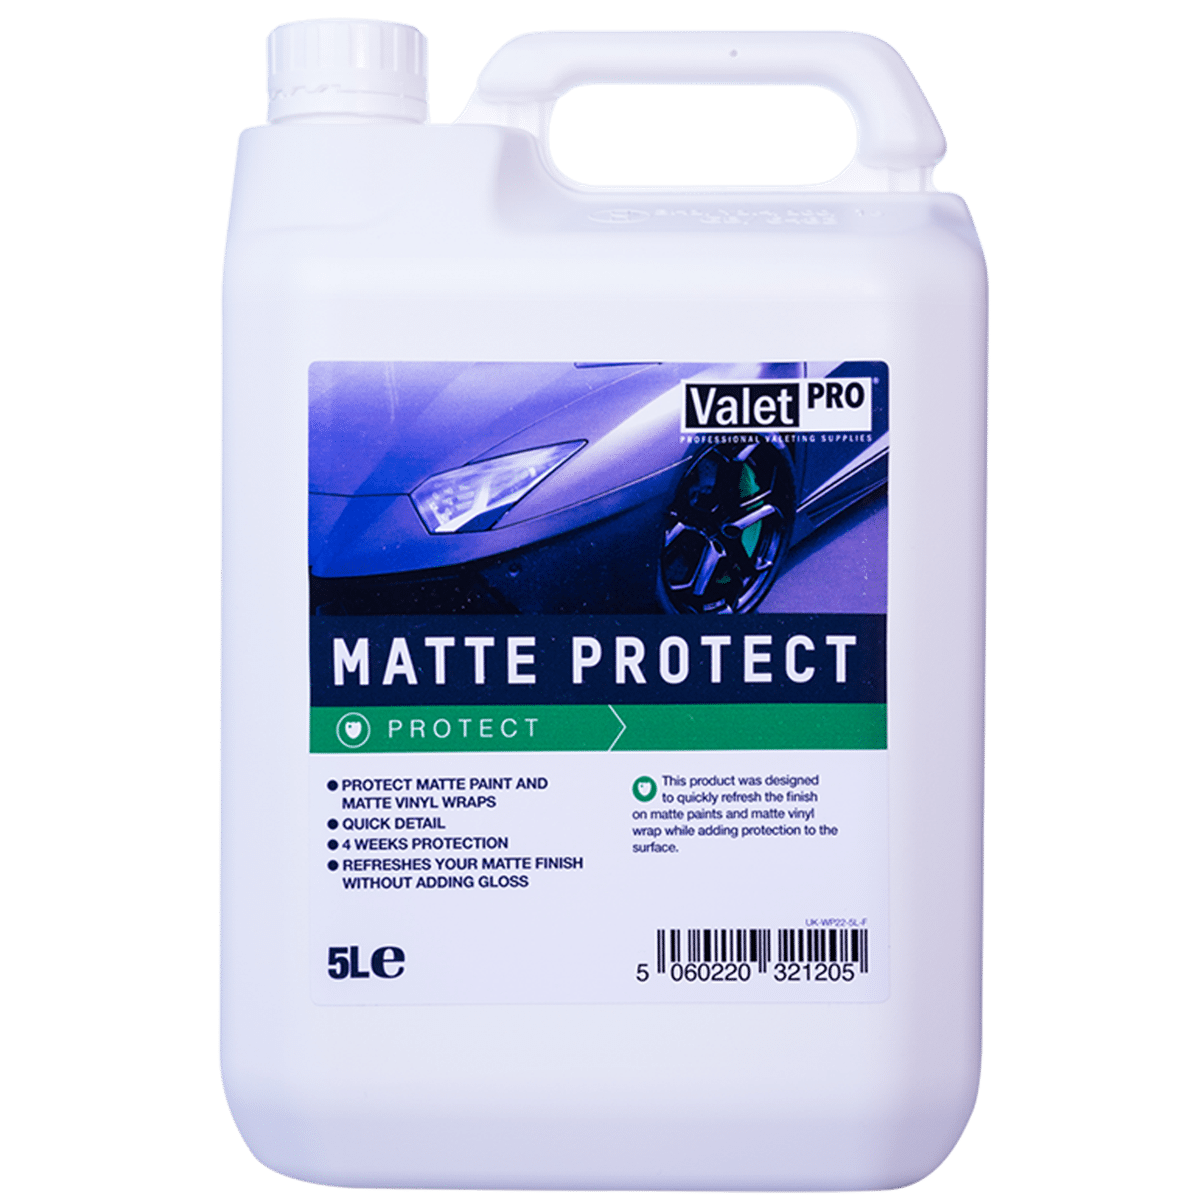 ValetPRO Matte Protect 5l Środek do Ochrony Matowych Lakierów oraz Matowych Okładzin Winylowych